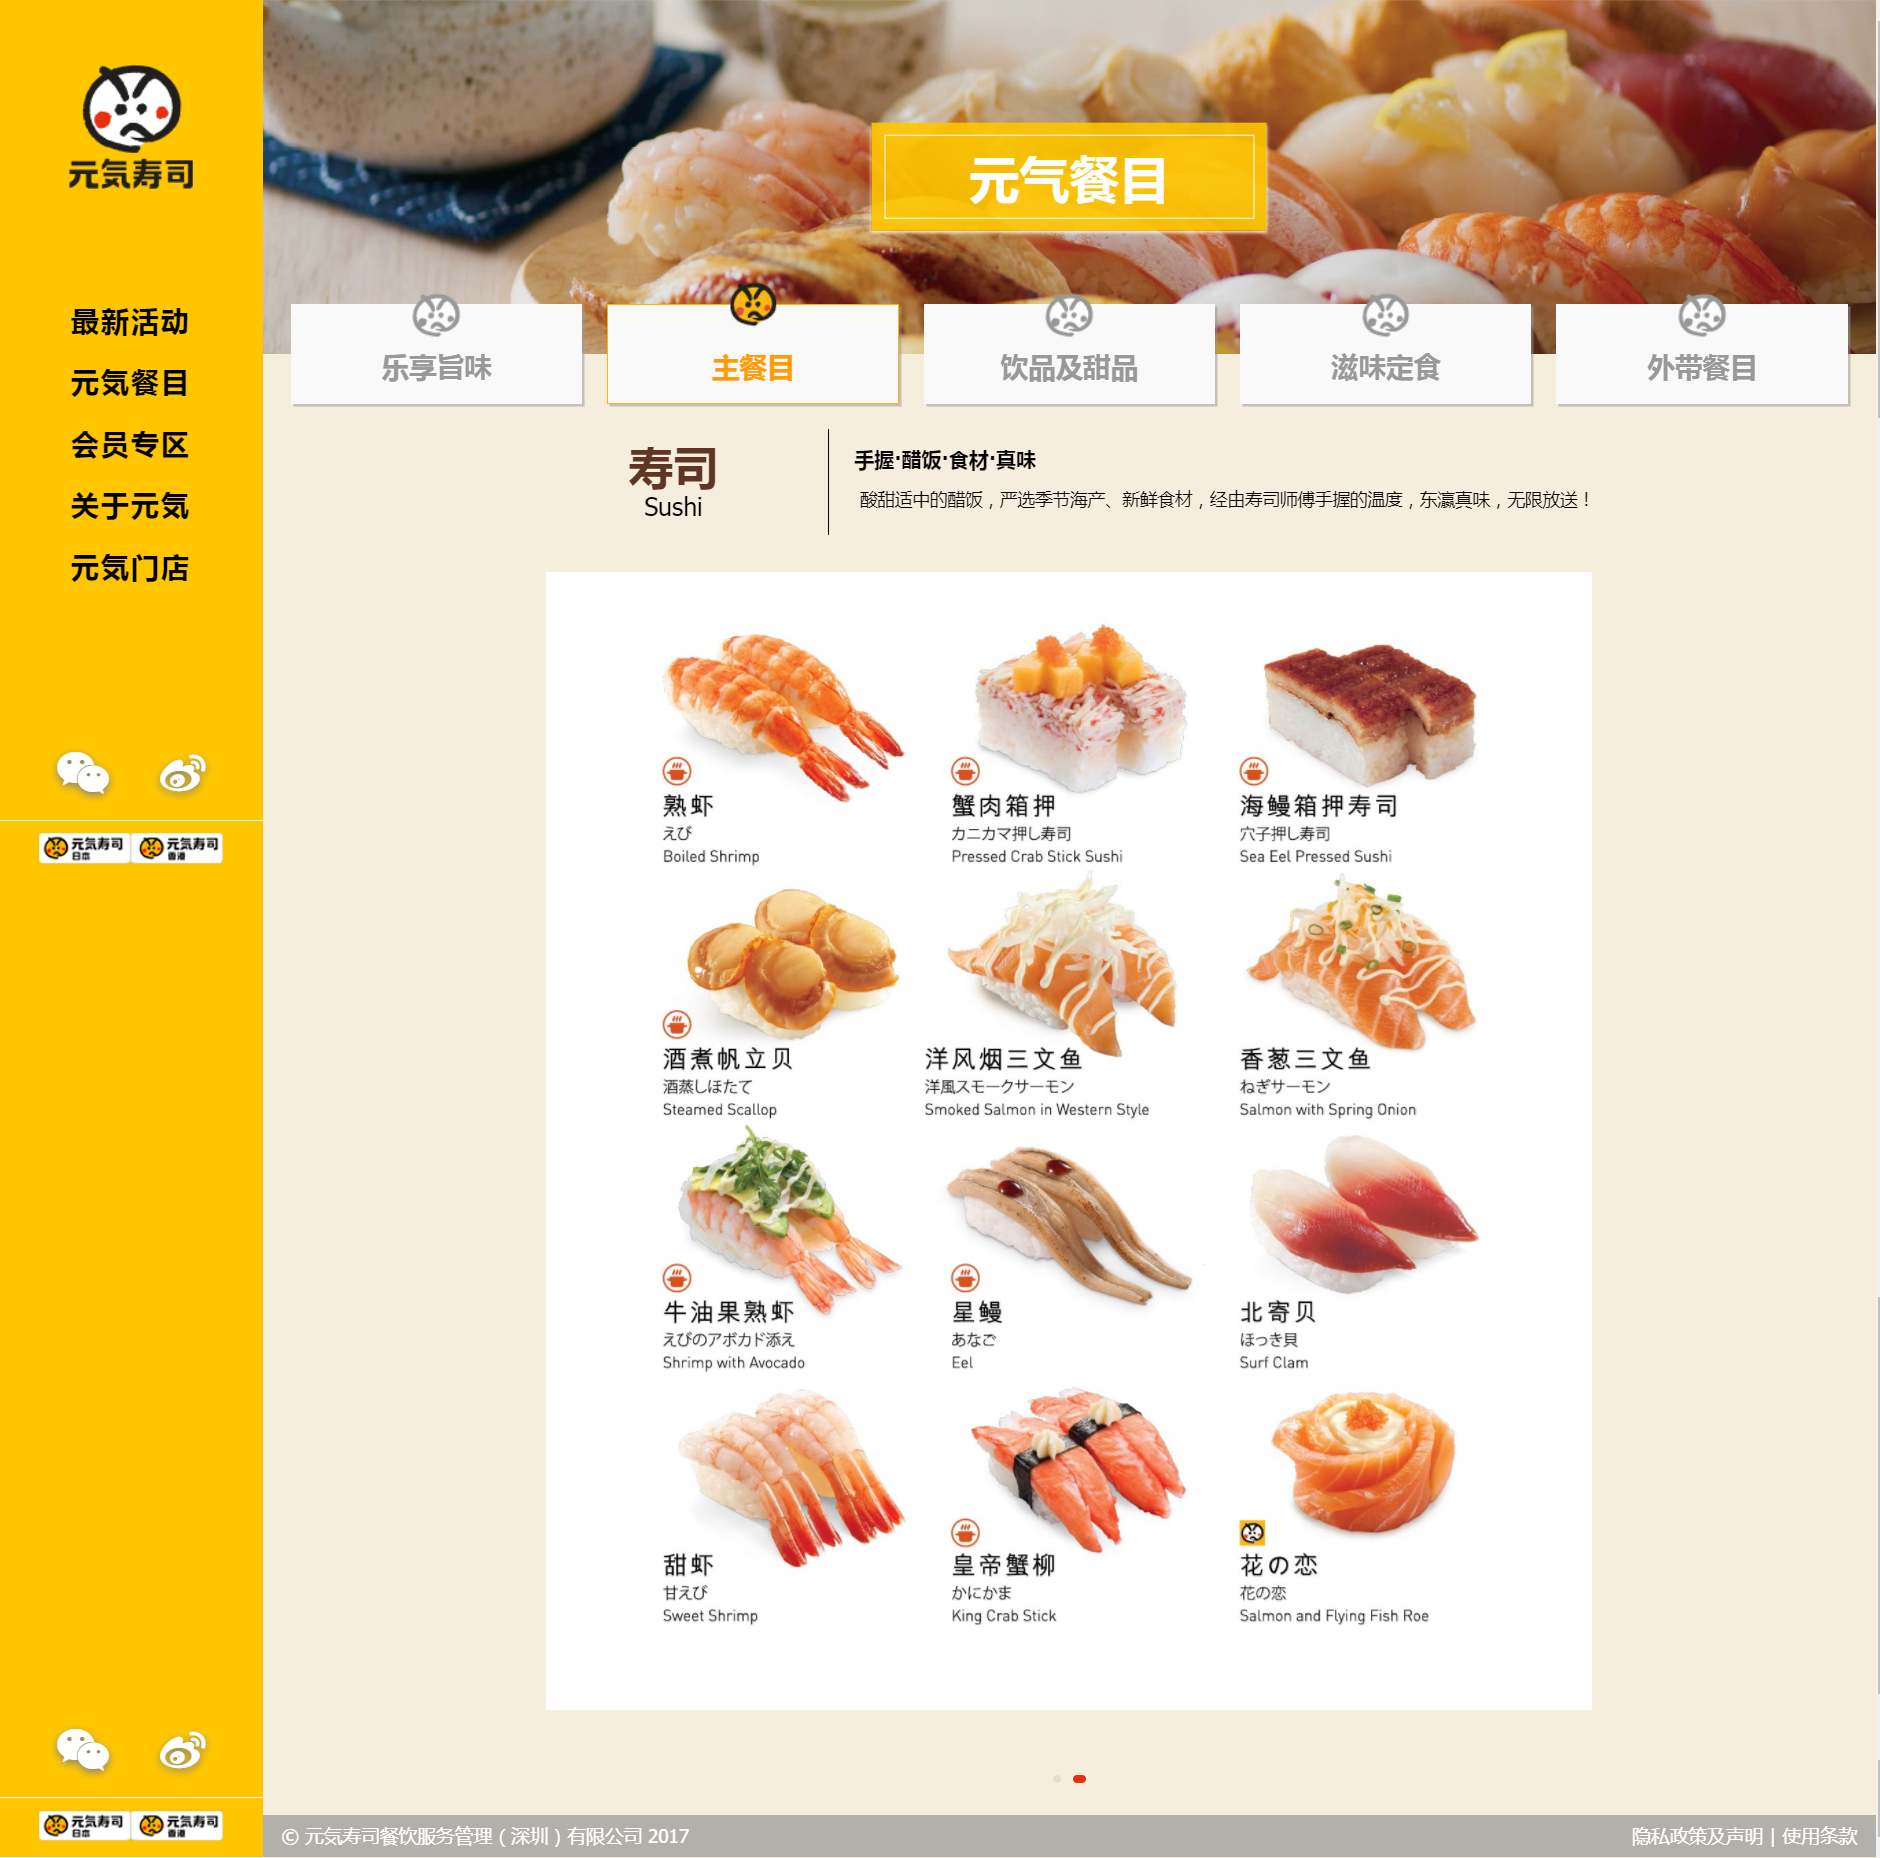 Genki China's Homepage